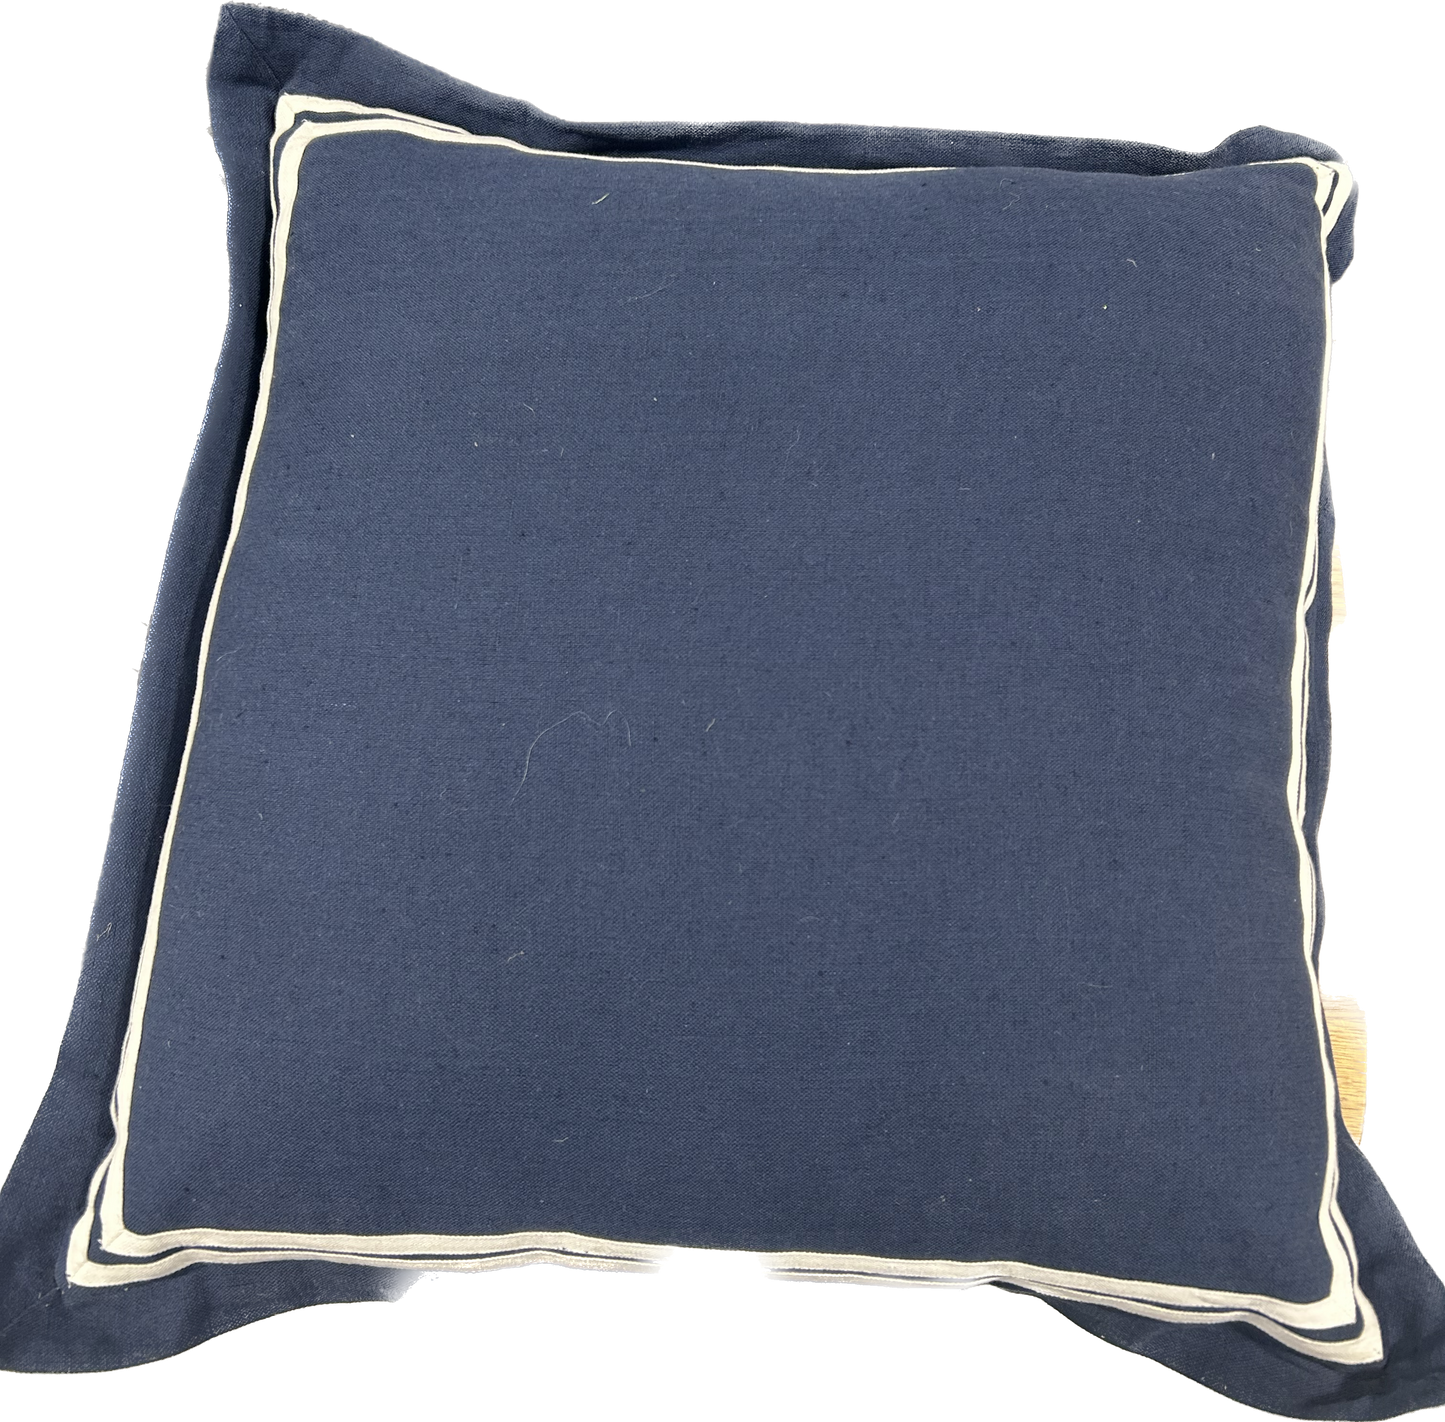 Nautical Blue Cushion